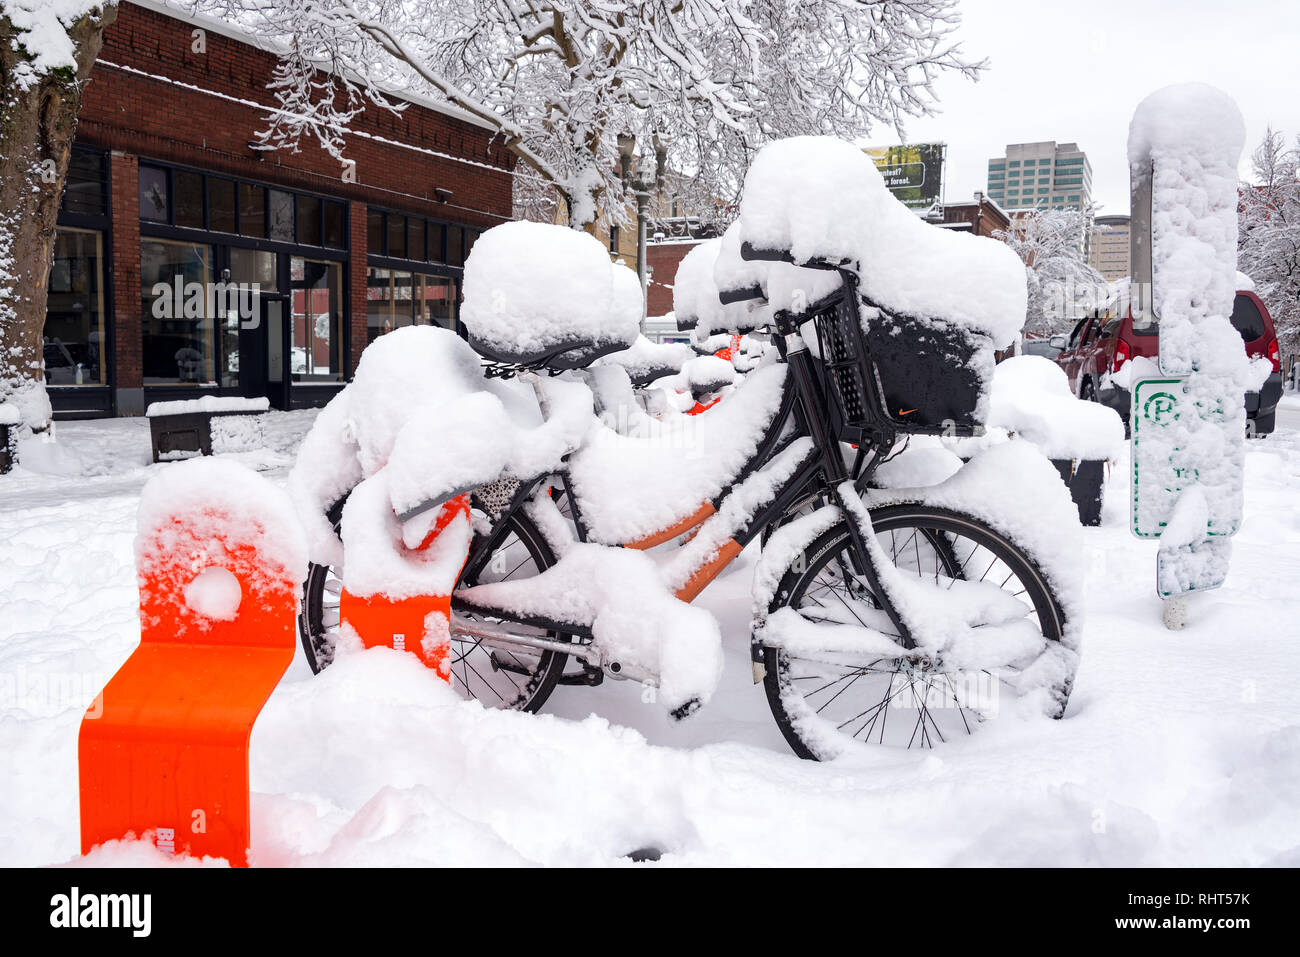 PORTLAND, OR - le 11 janvier : Biketown gare à Portland, Oregon sous la neige après une tempête énorme vu le 11 janvier 2017 Banque D'Images